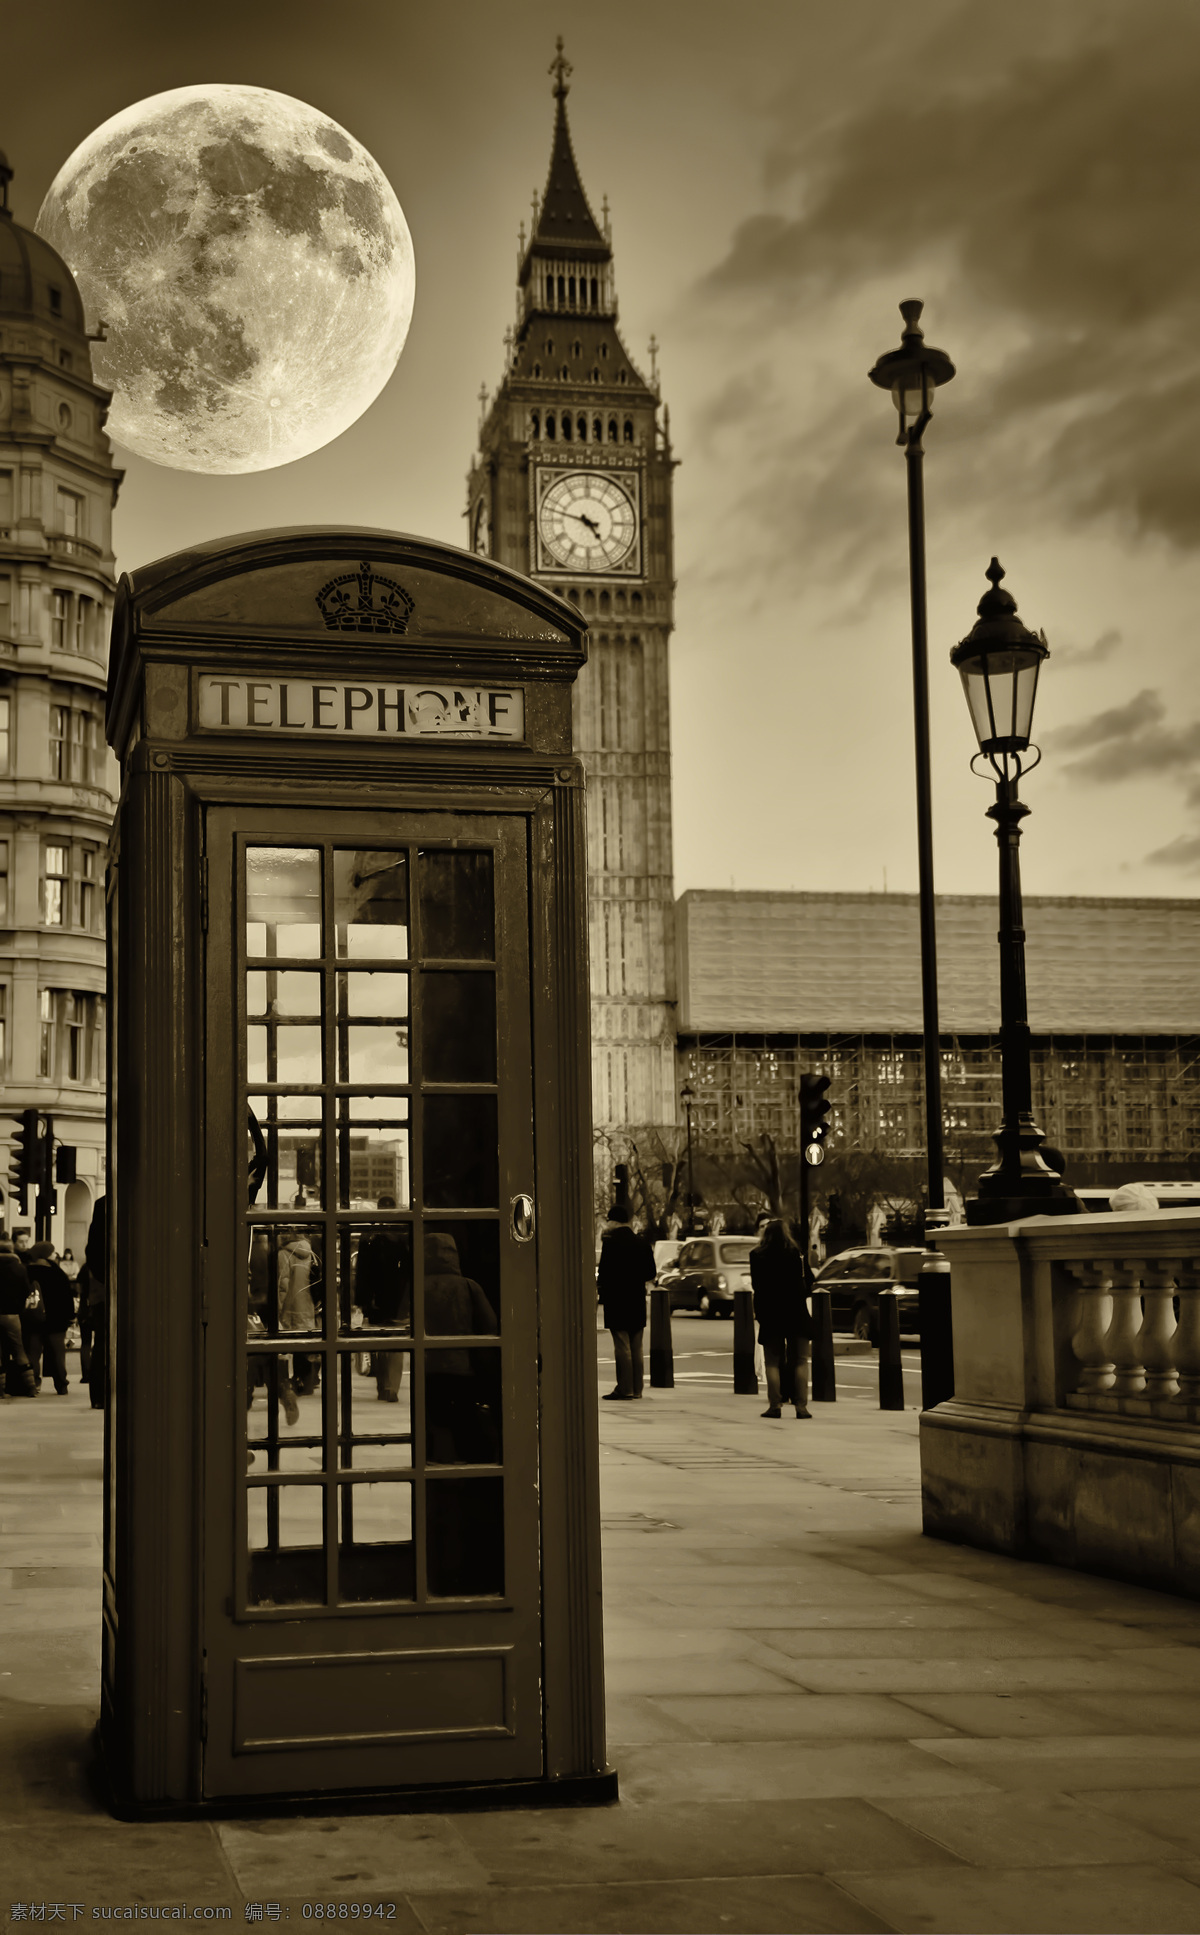 月亮与大本钟 伦敦大本钟 电话亭 城市风景 美丽风景 美丽景色 风景摄影 美景 美丽风光 城市风光 环境家居 黑色